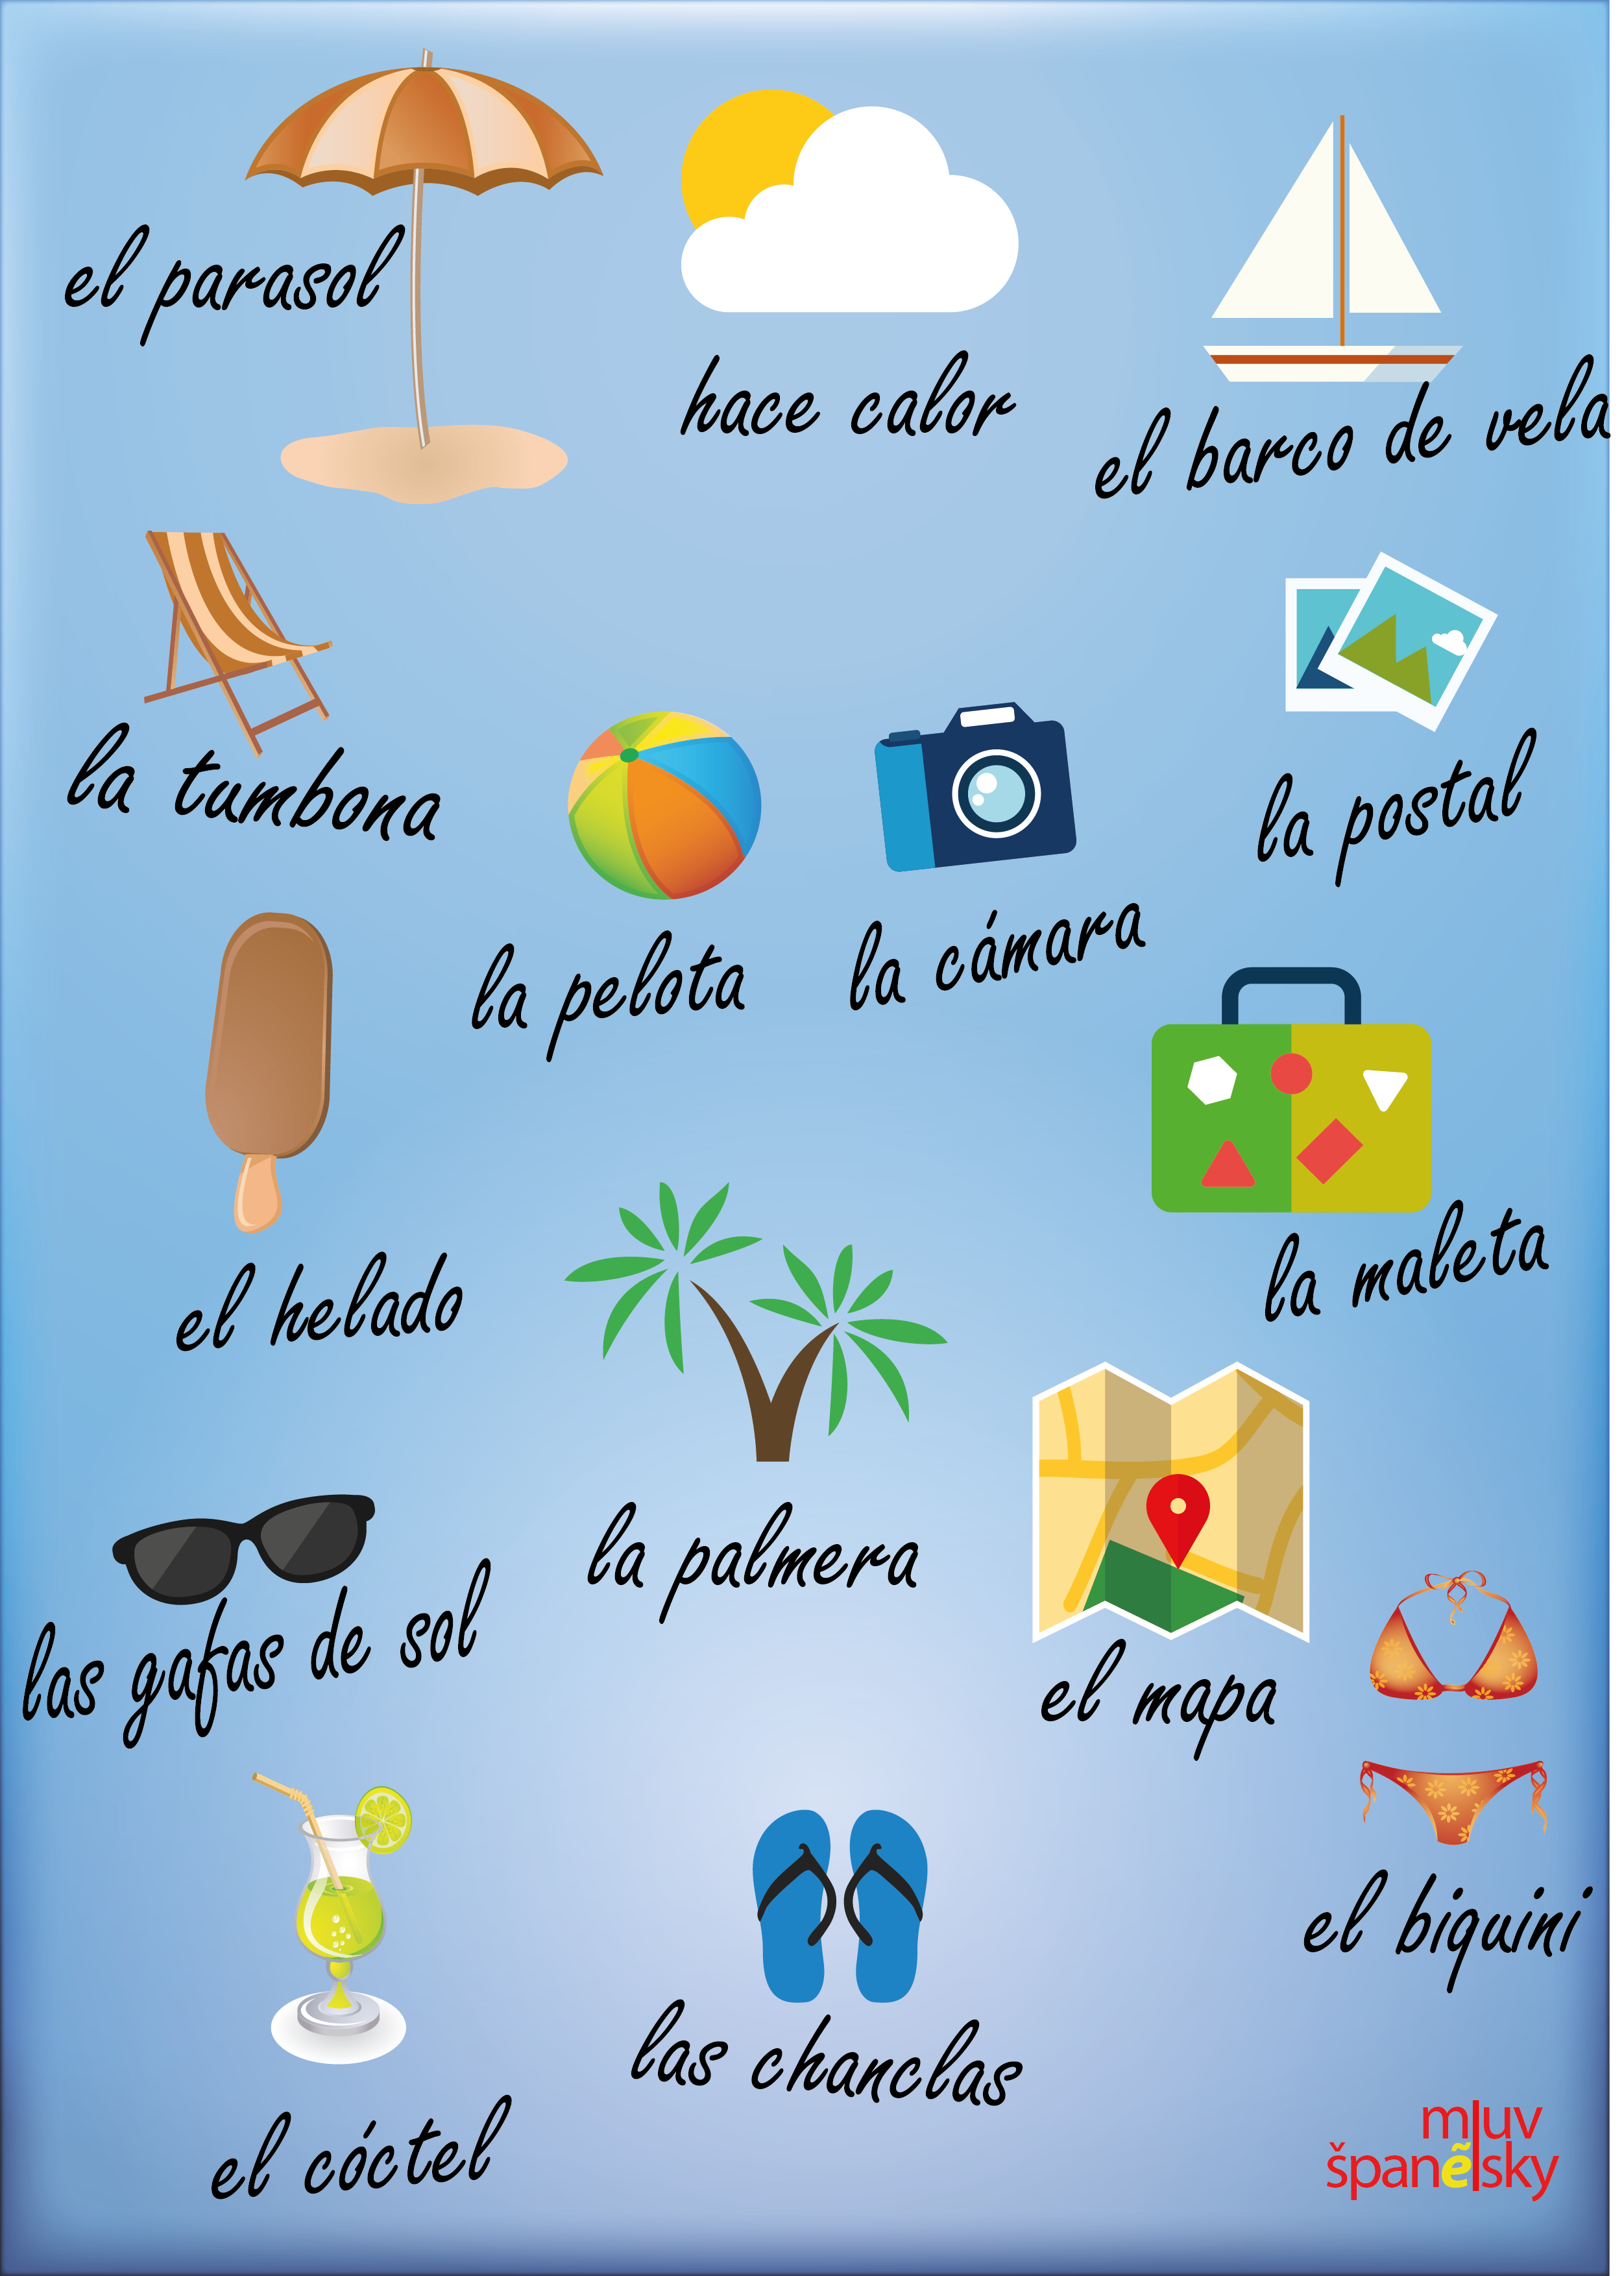 slovní zásoba ve španělštině týkající se léta